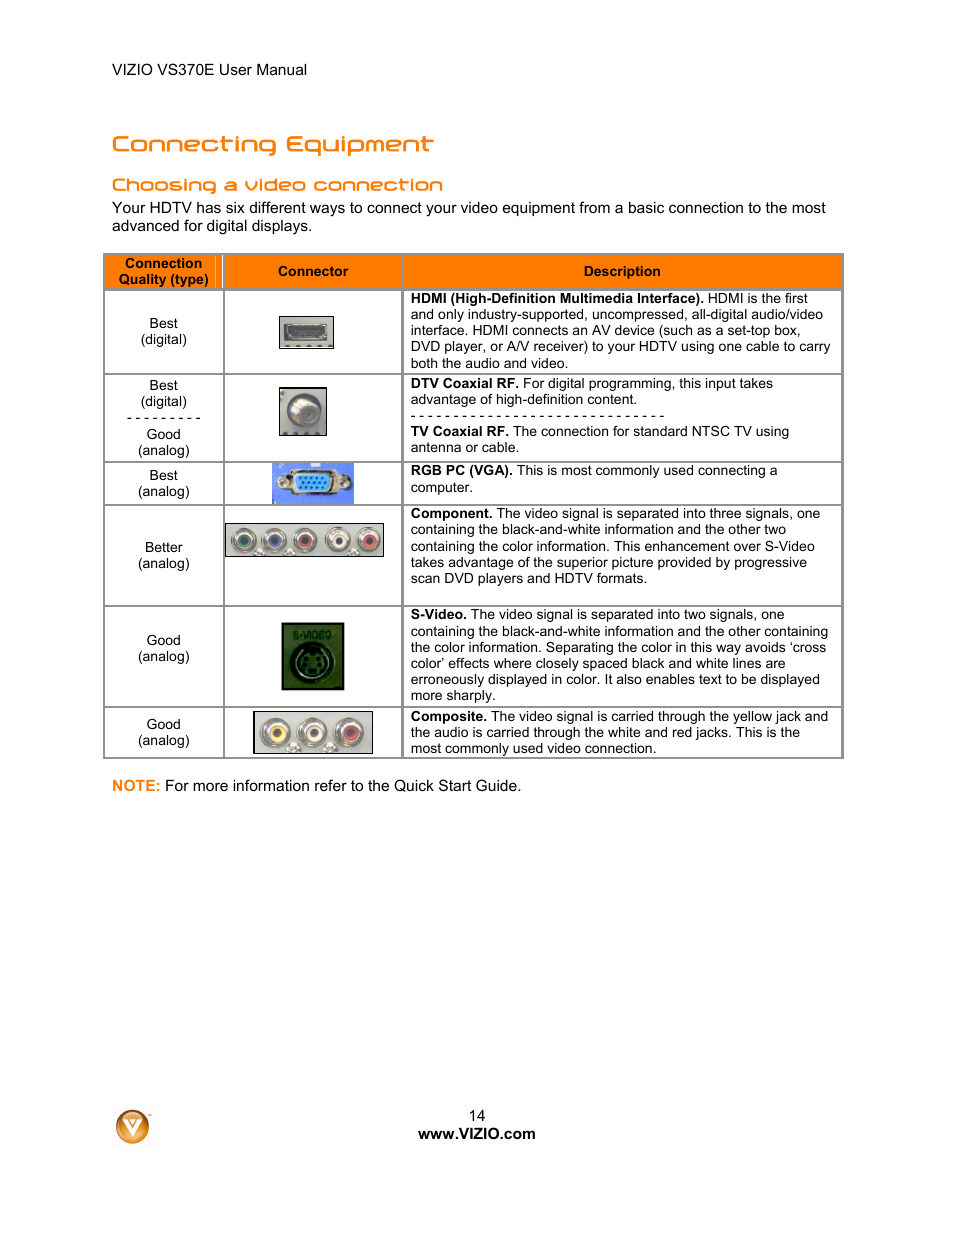 Connecting equipment | Vizio VS370E User Manual | Page 14 / 43